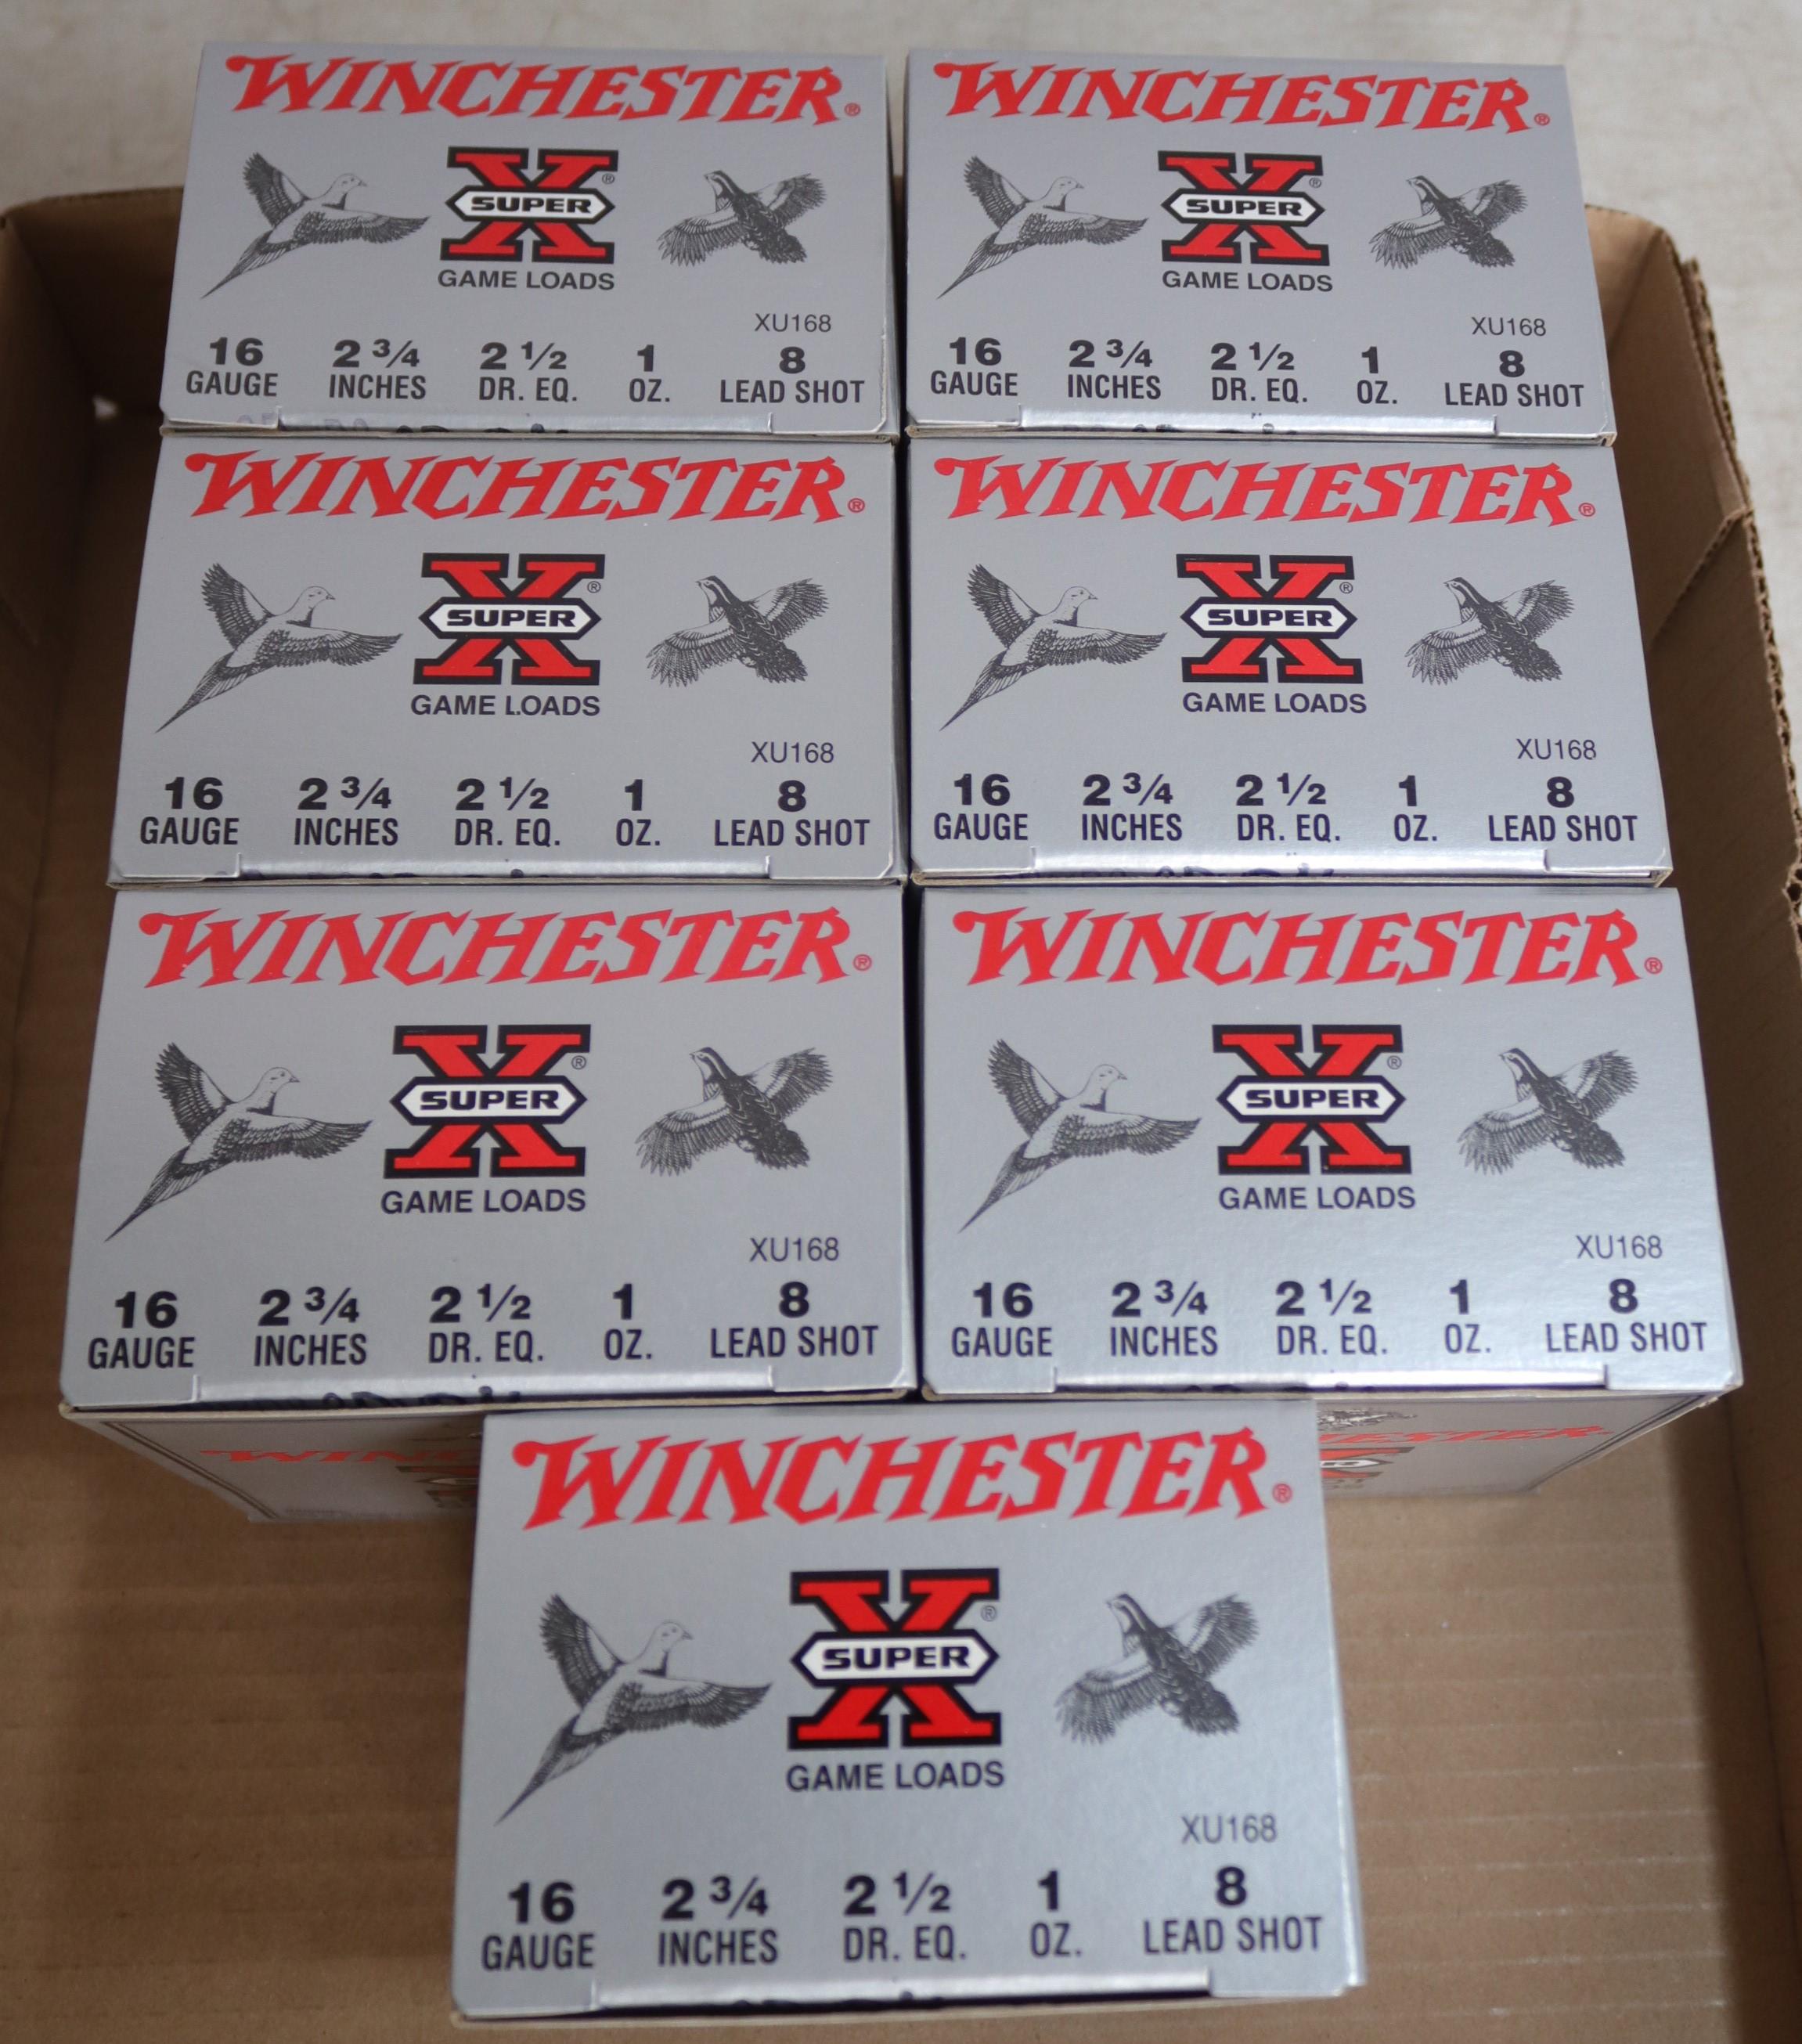 Winchester Shotgun Shells